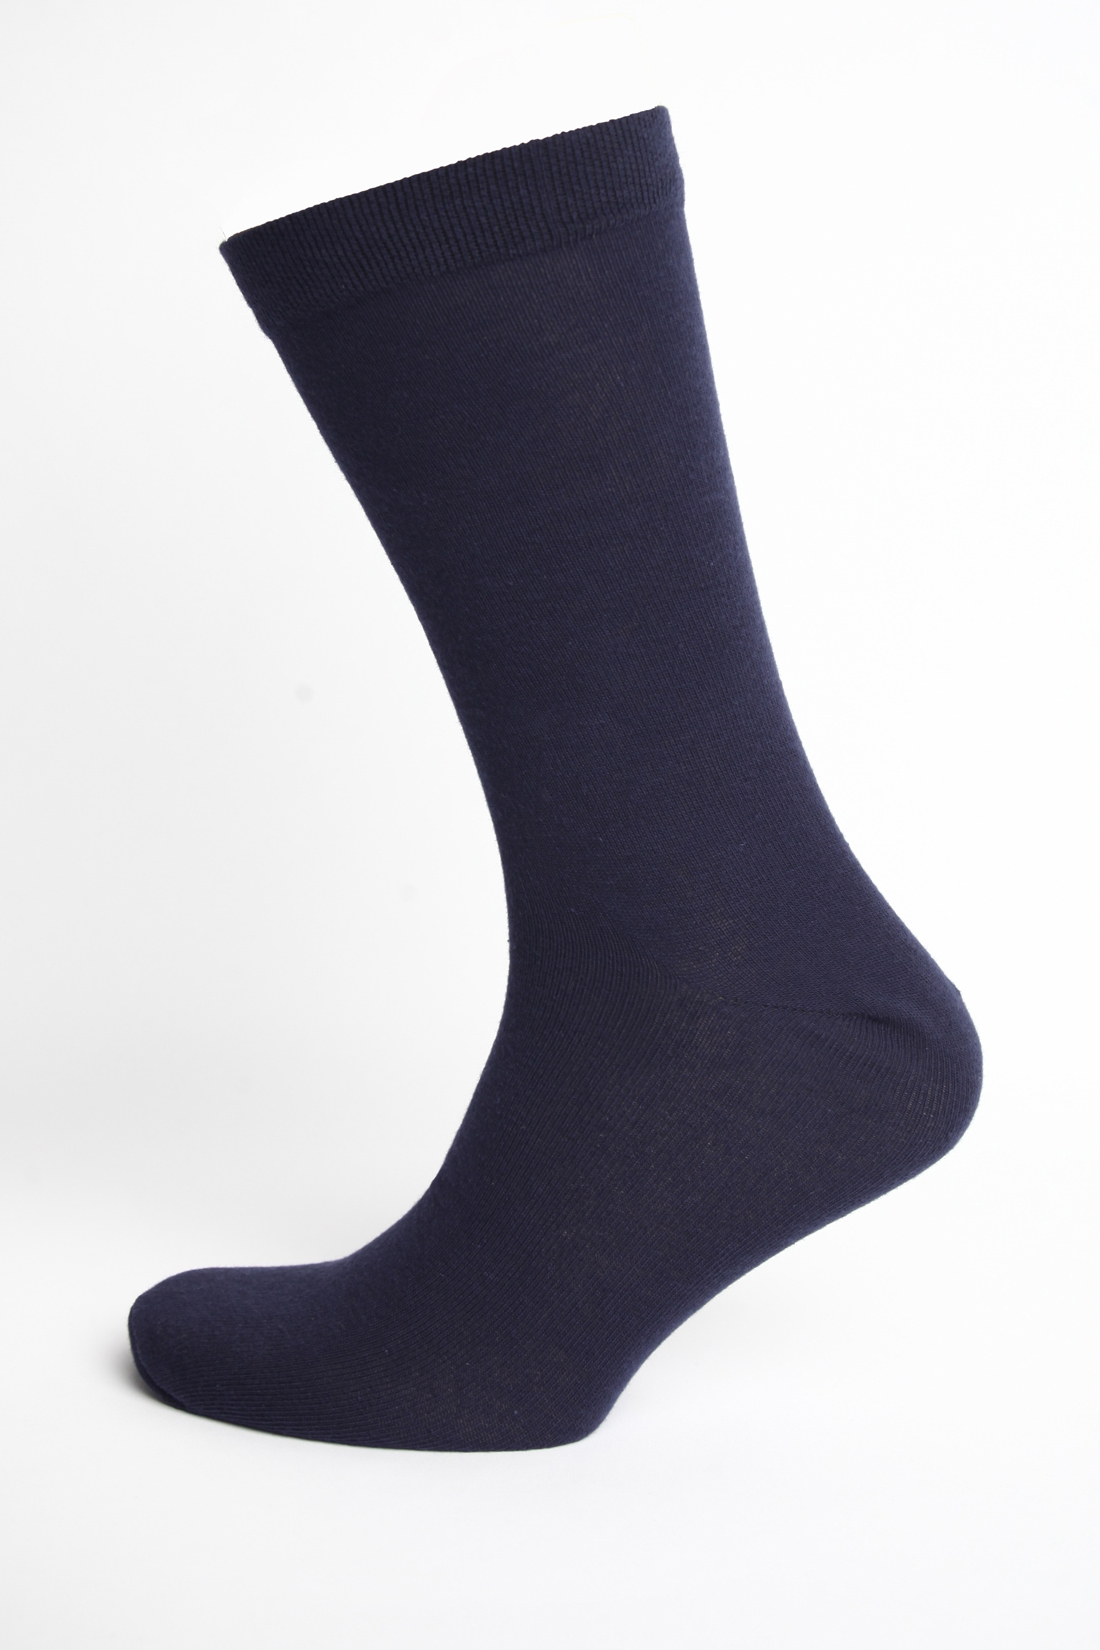 Мужские носки, 1 пара (арт. baon B891008), размер 43/45, цвет синий Мужские носки, 1 пара (арт. baon B891008) - фото 1